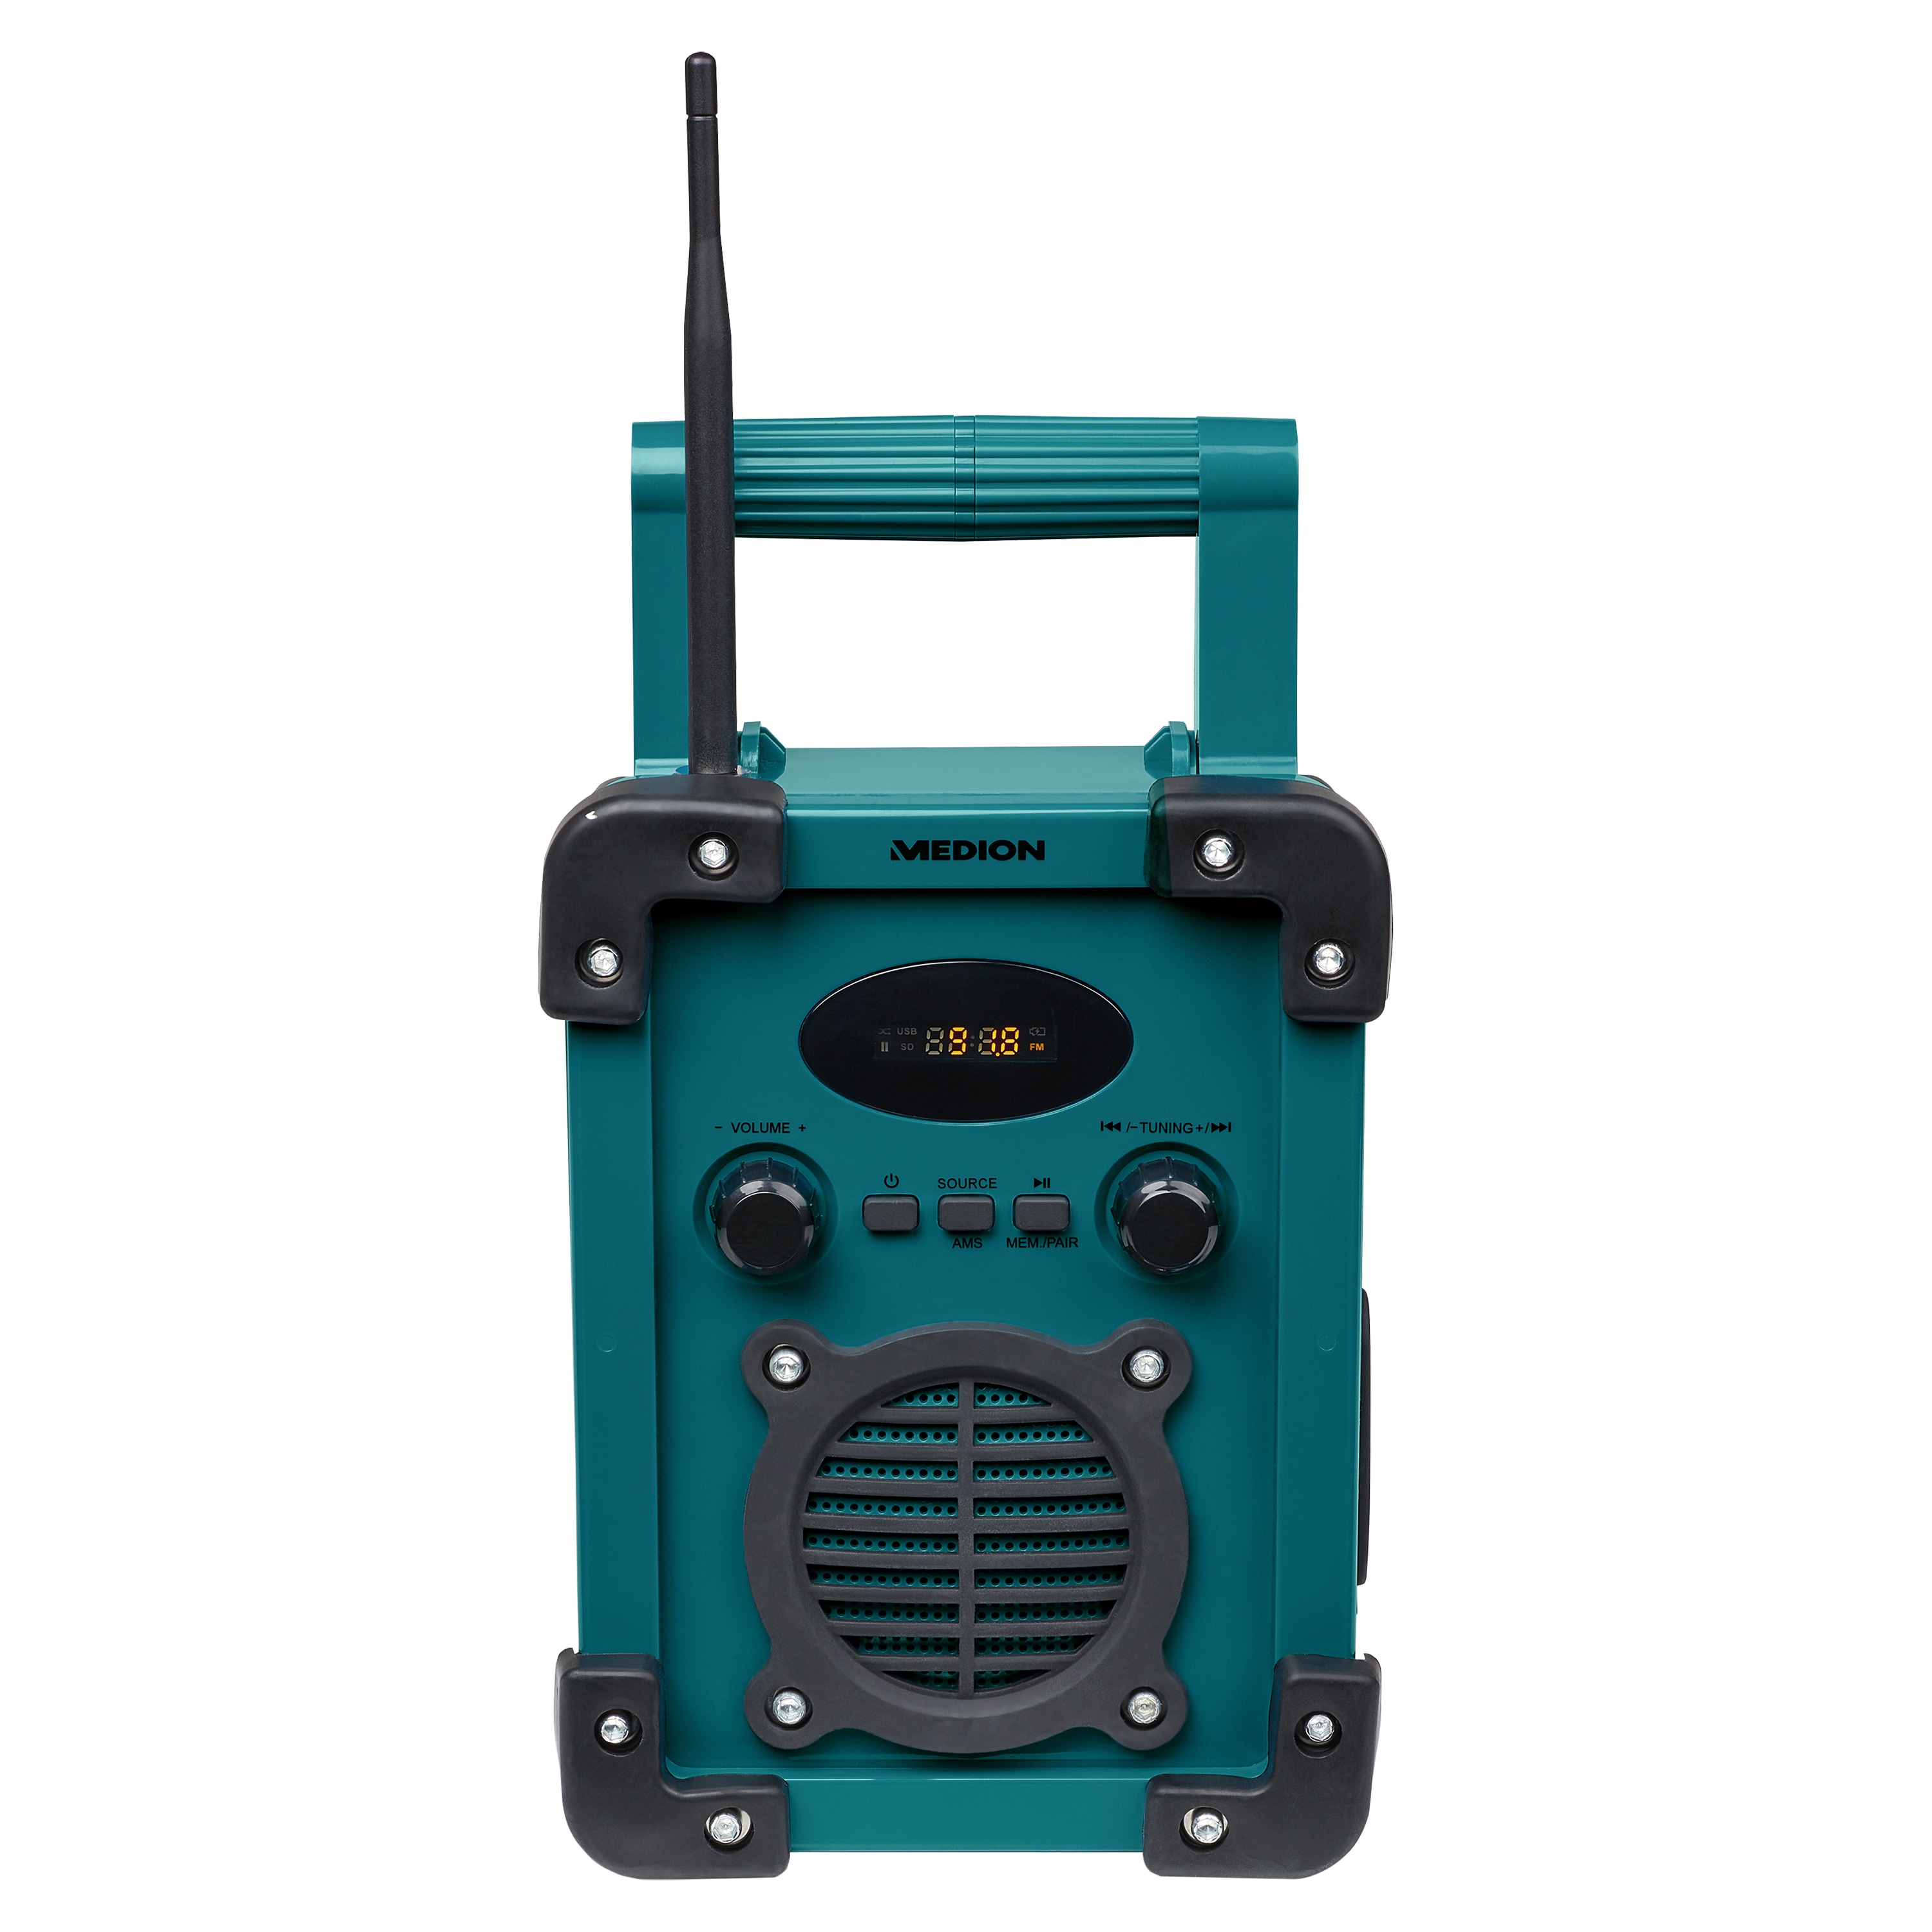 PLL UKW Radio Spritzwassergeschützt LED-Arbeitslicht integrierter Akku IP44 Robustes Gehäuse MEDION P66220 Baustellenradio mit Bluetooth 5.0 